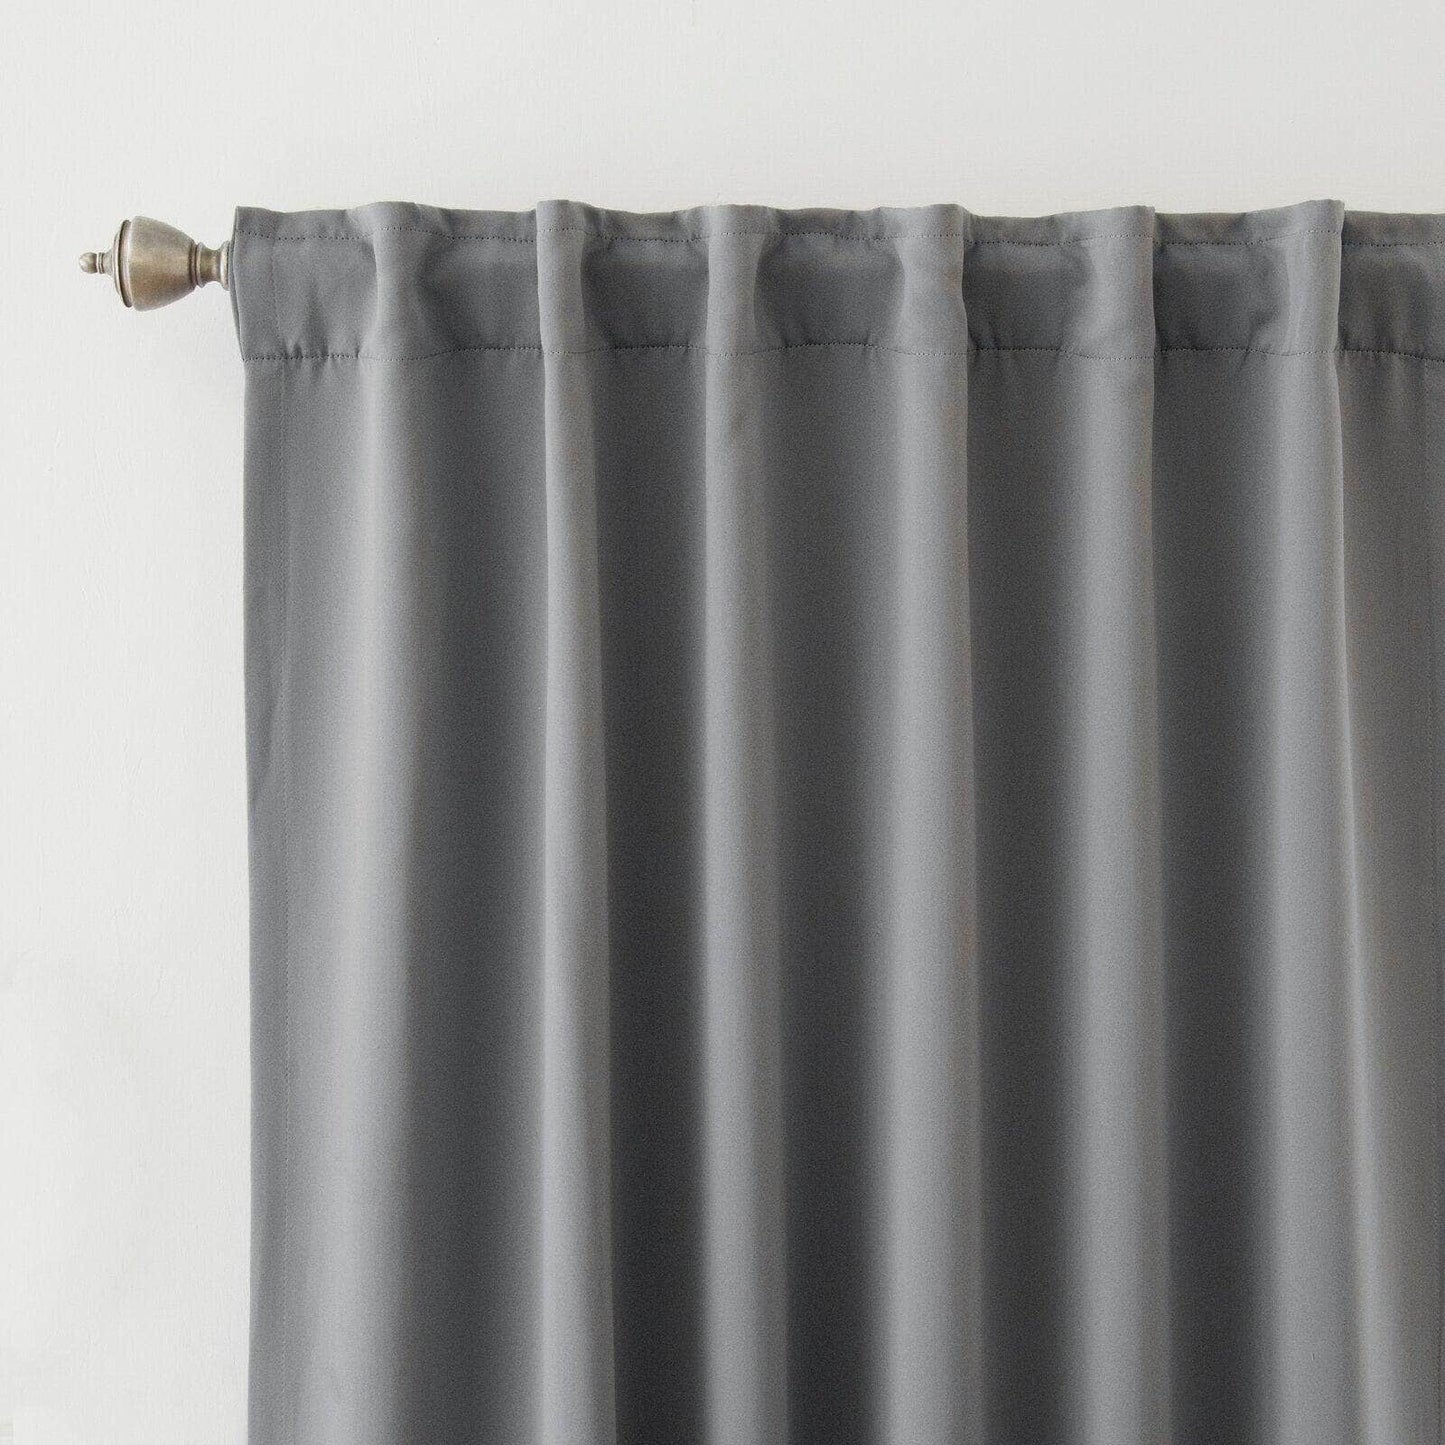 Penguin Group Curtains 250 H × 140 W (cm) Grey Velvet RikTig curtain